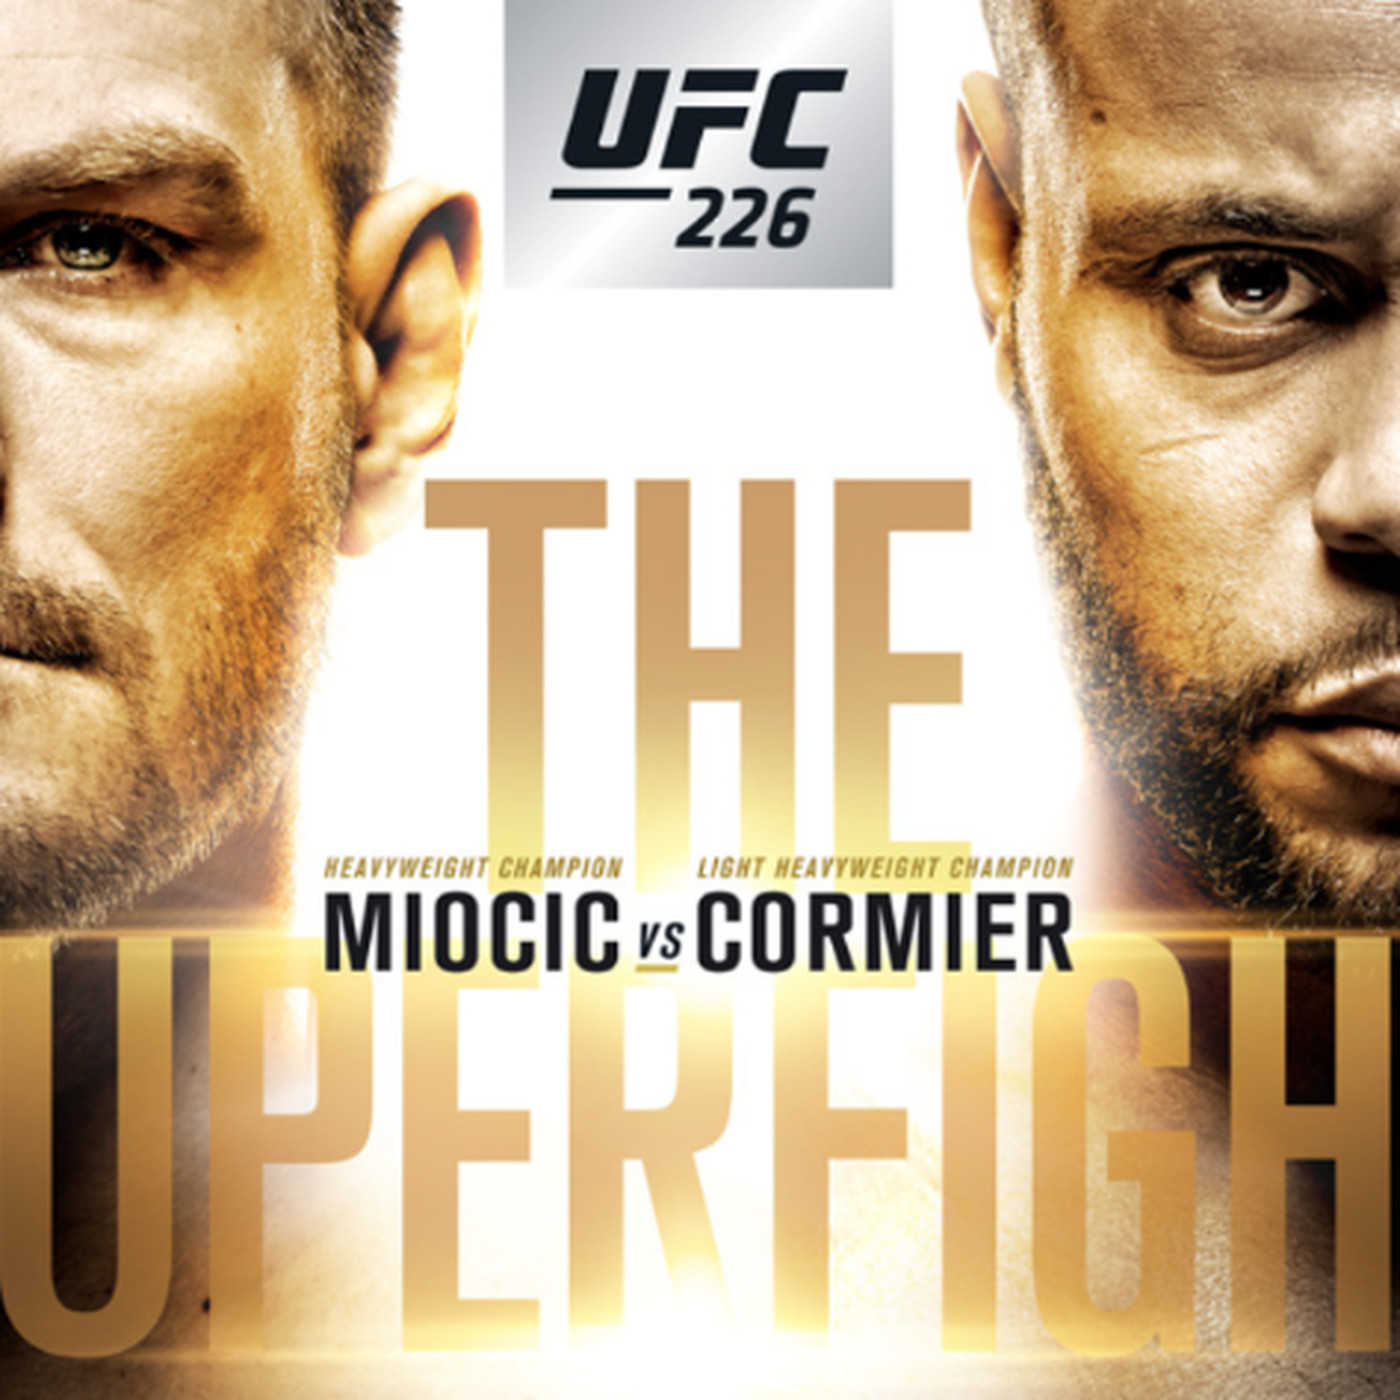 UFC 241 Cormier vs Miocic Poster 24 x 36